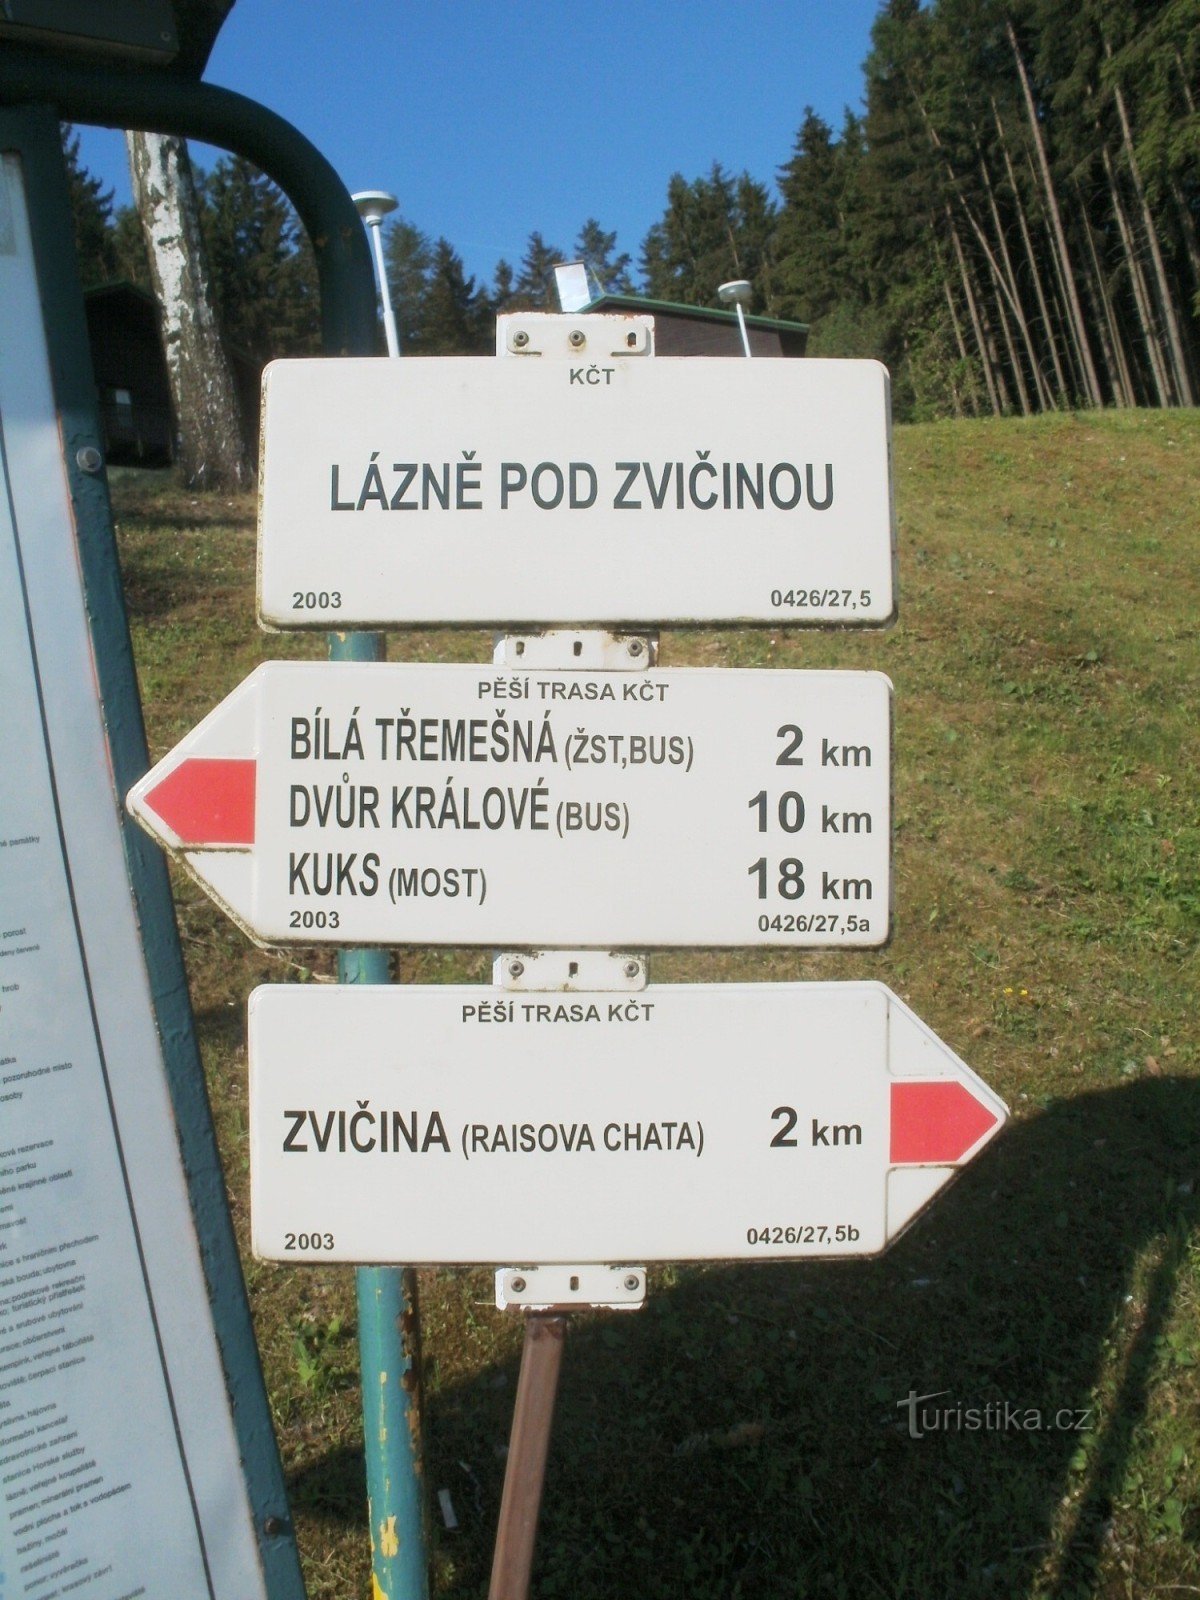 Lázně pod Zvičinou turisztikai útkereszteződése